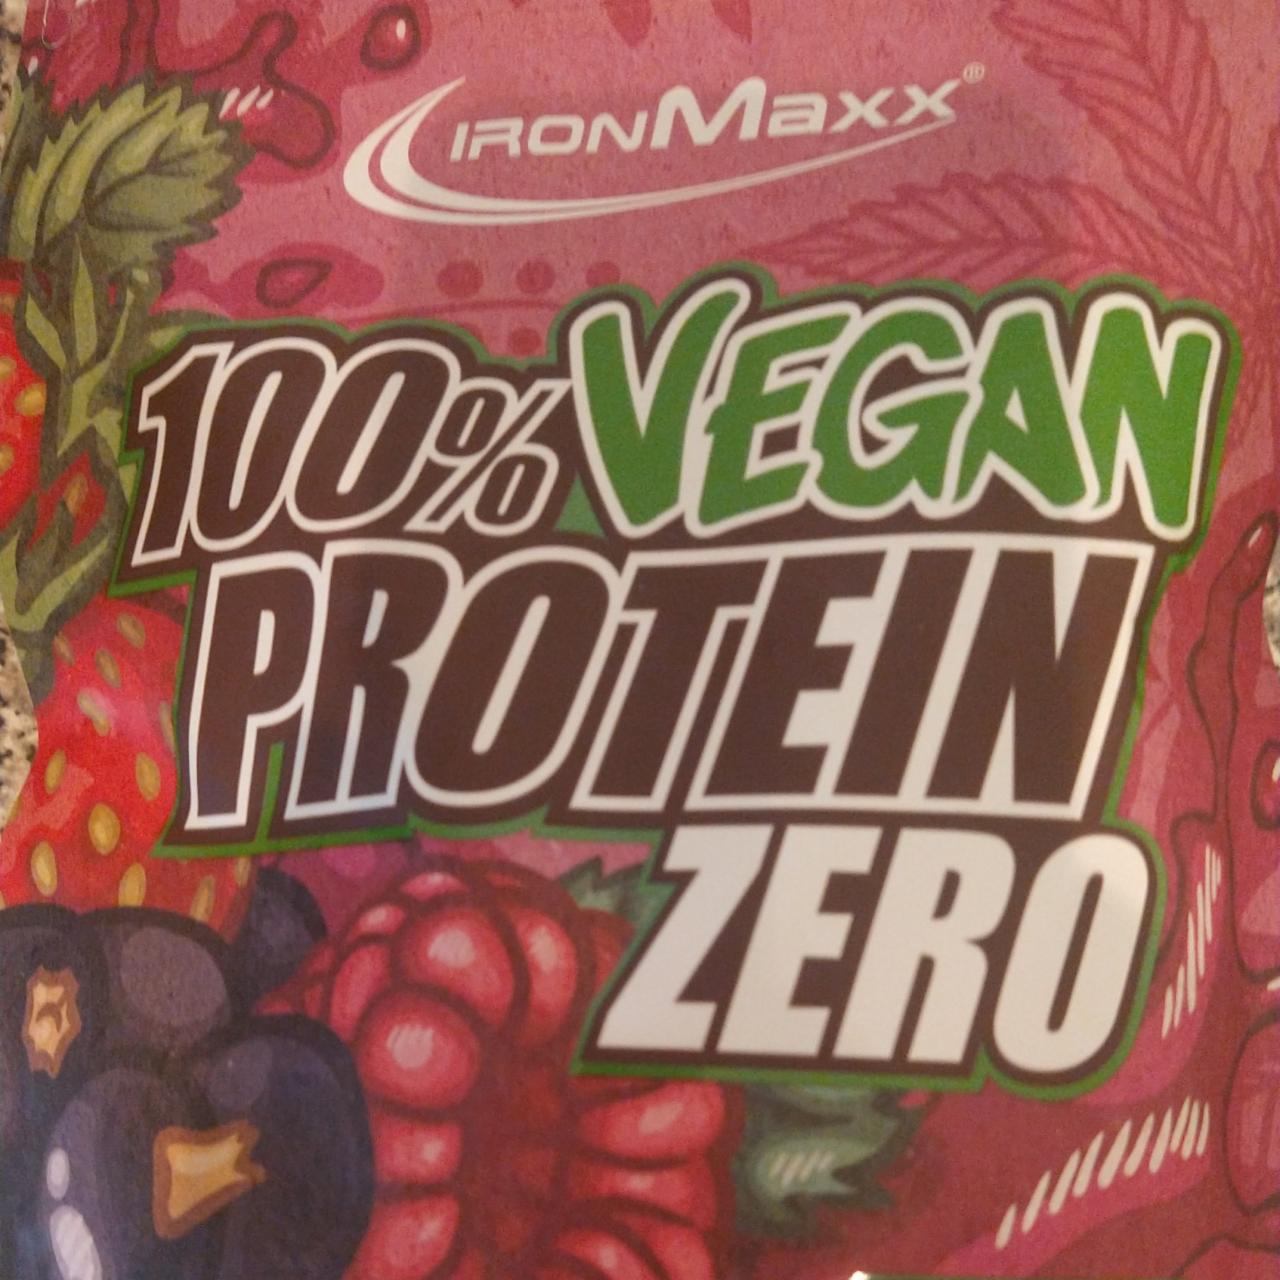 Fotografie - 100% Vegan Protein Zero mixed berries IronMaxx